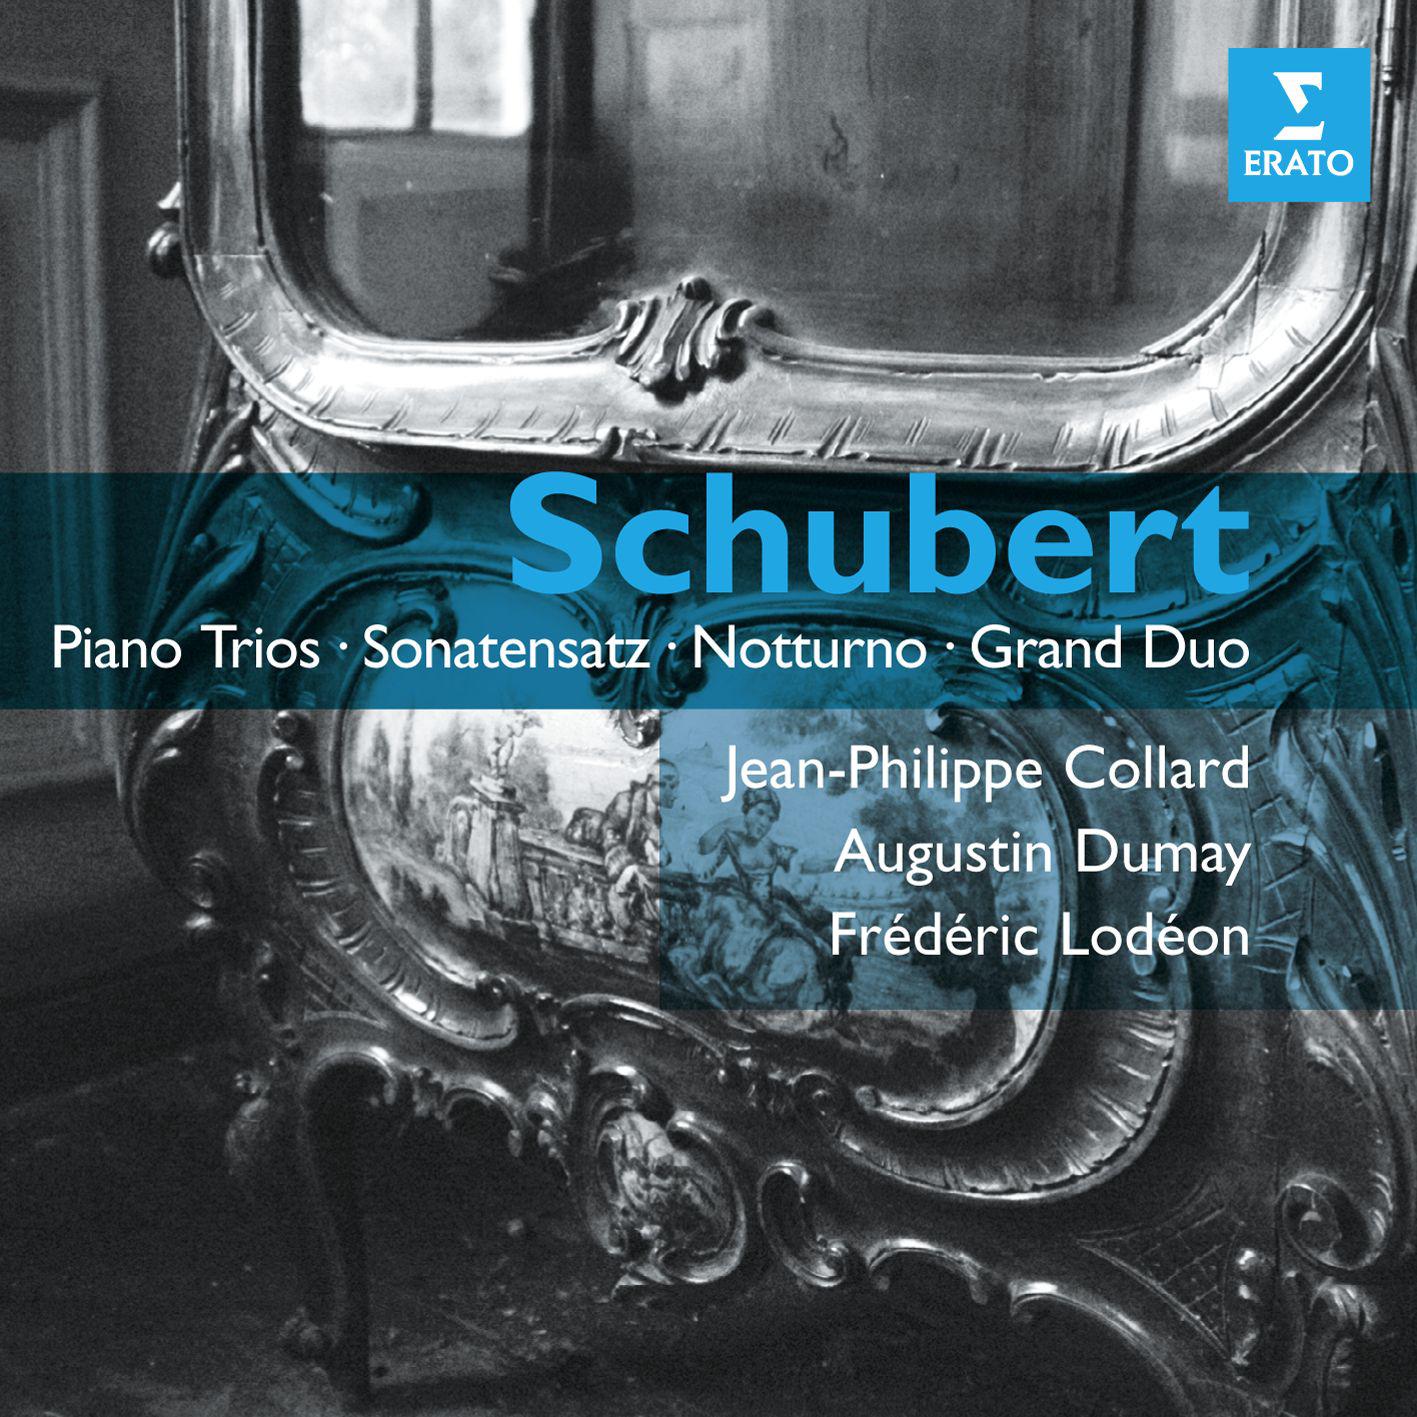 Piano Trio No. 1 in B Flat Major, D.898: III. Scherzo - Trio - Allegro